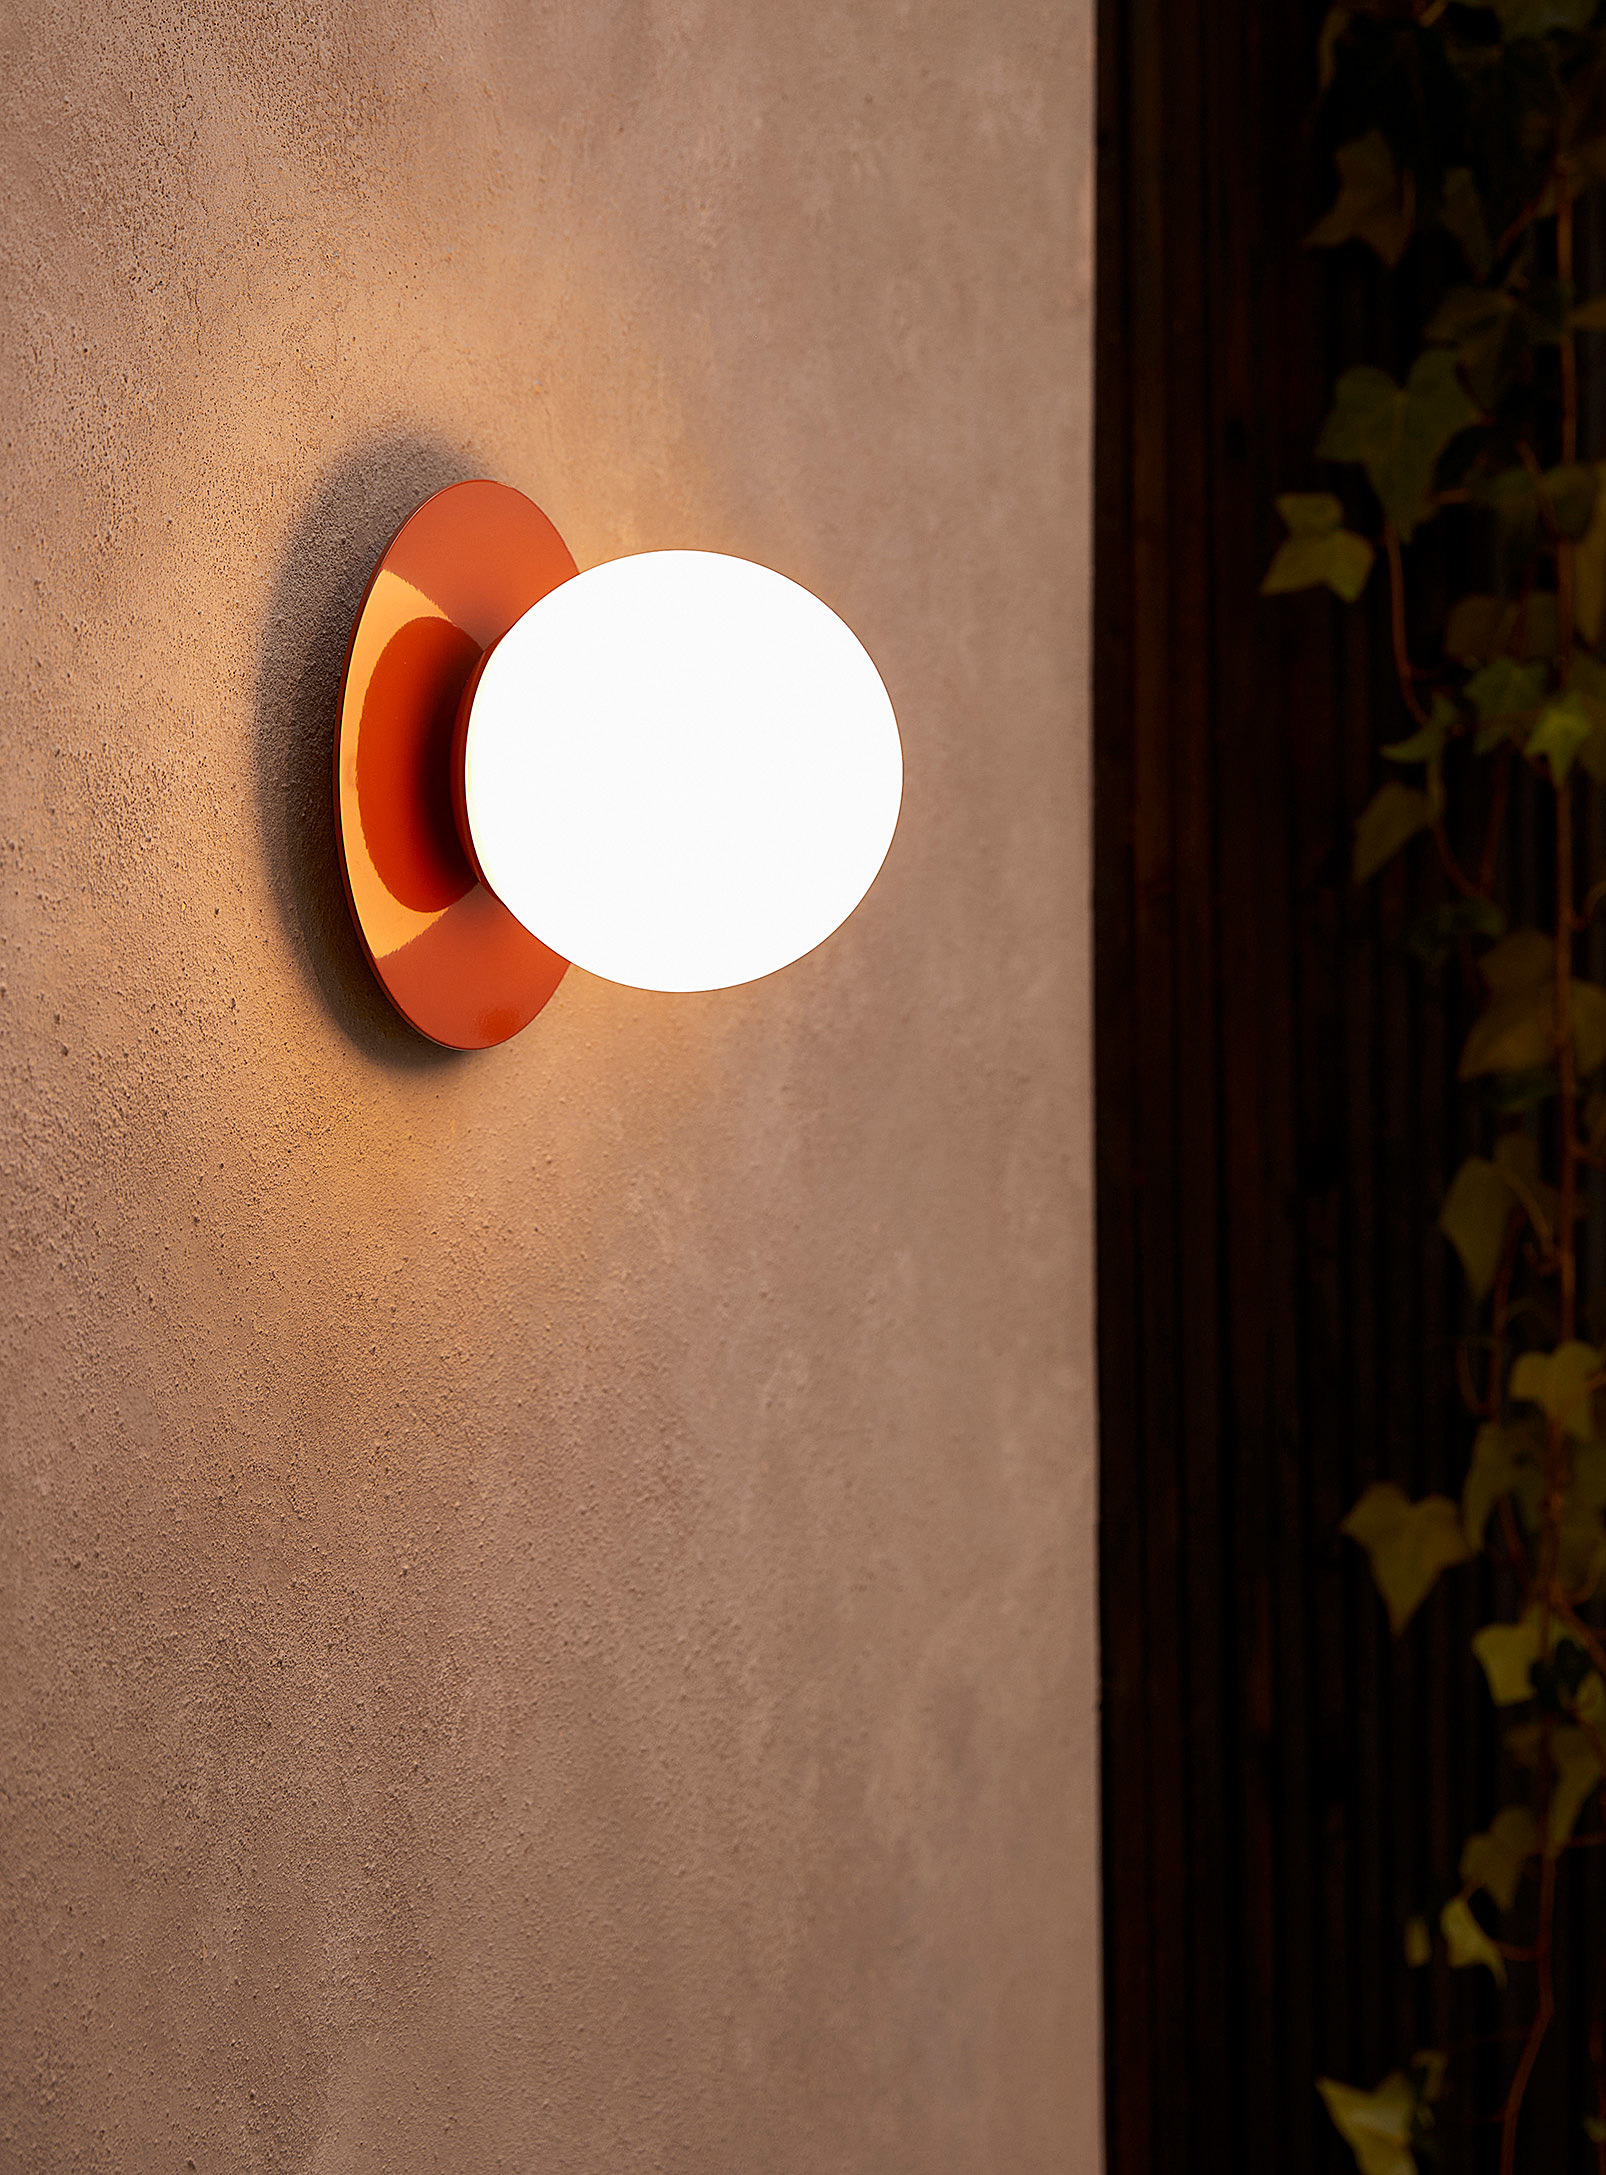 Luminaire Authentik Krema Indoor And Outdoor Light Fixture In Copper